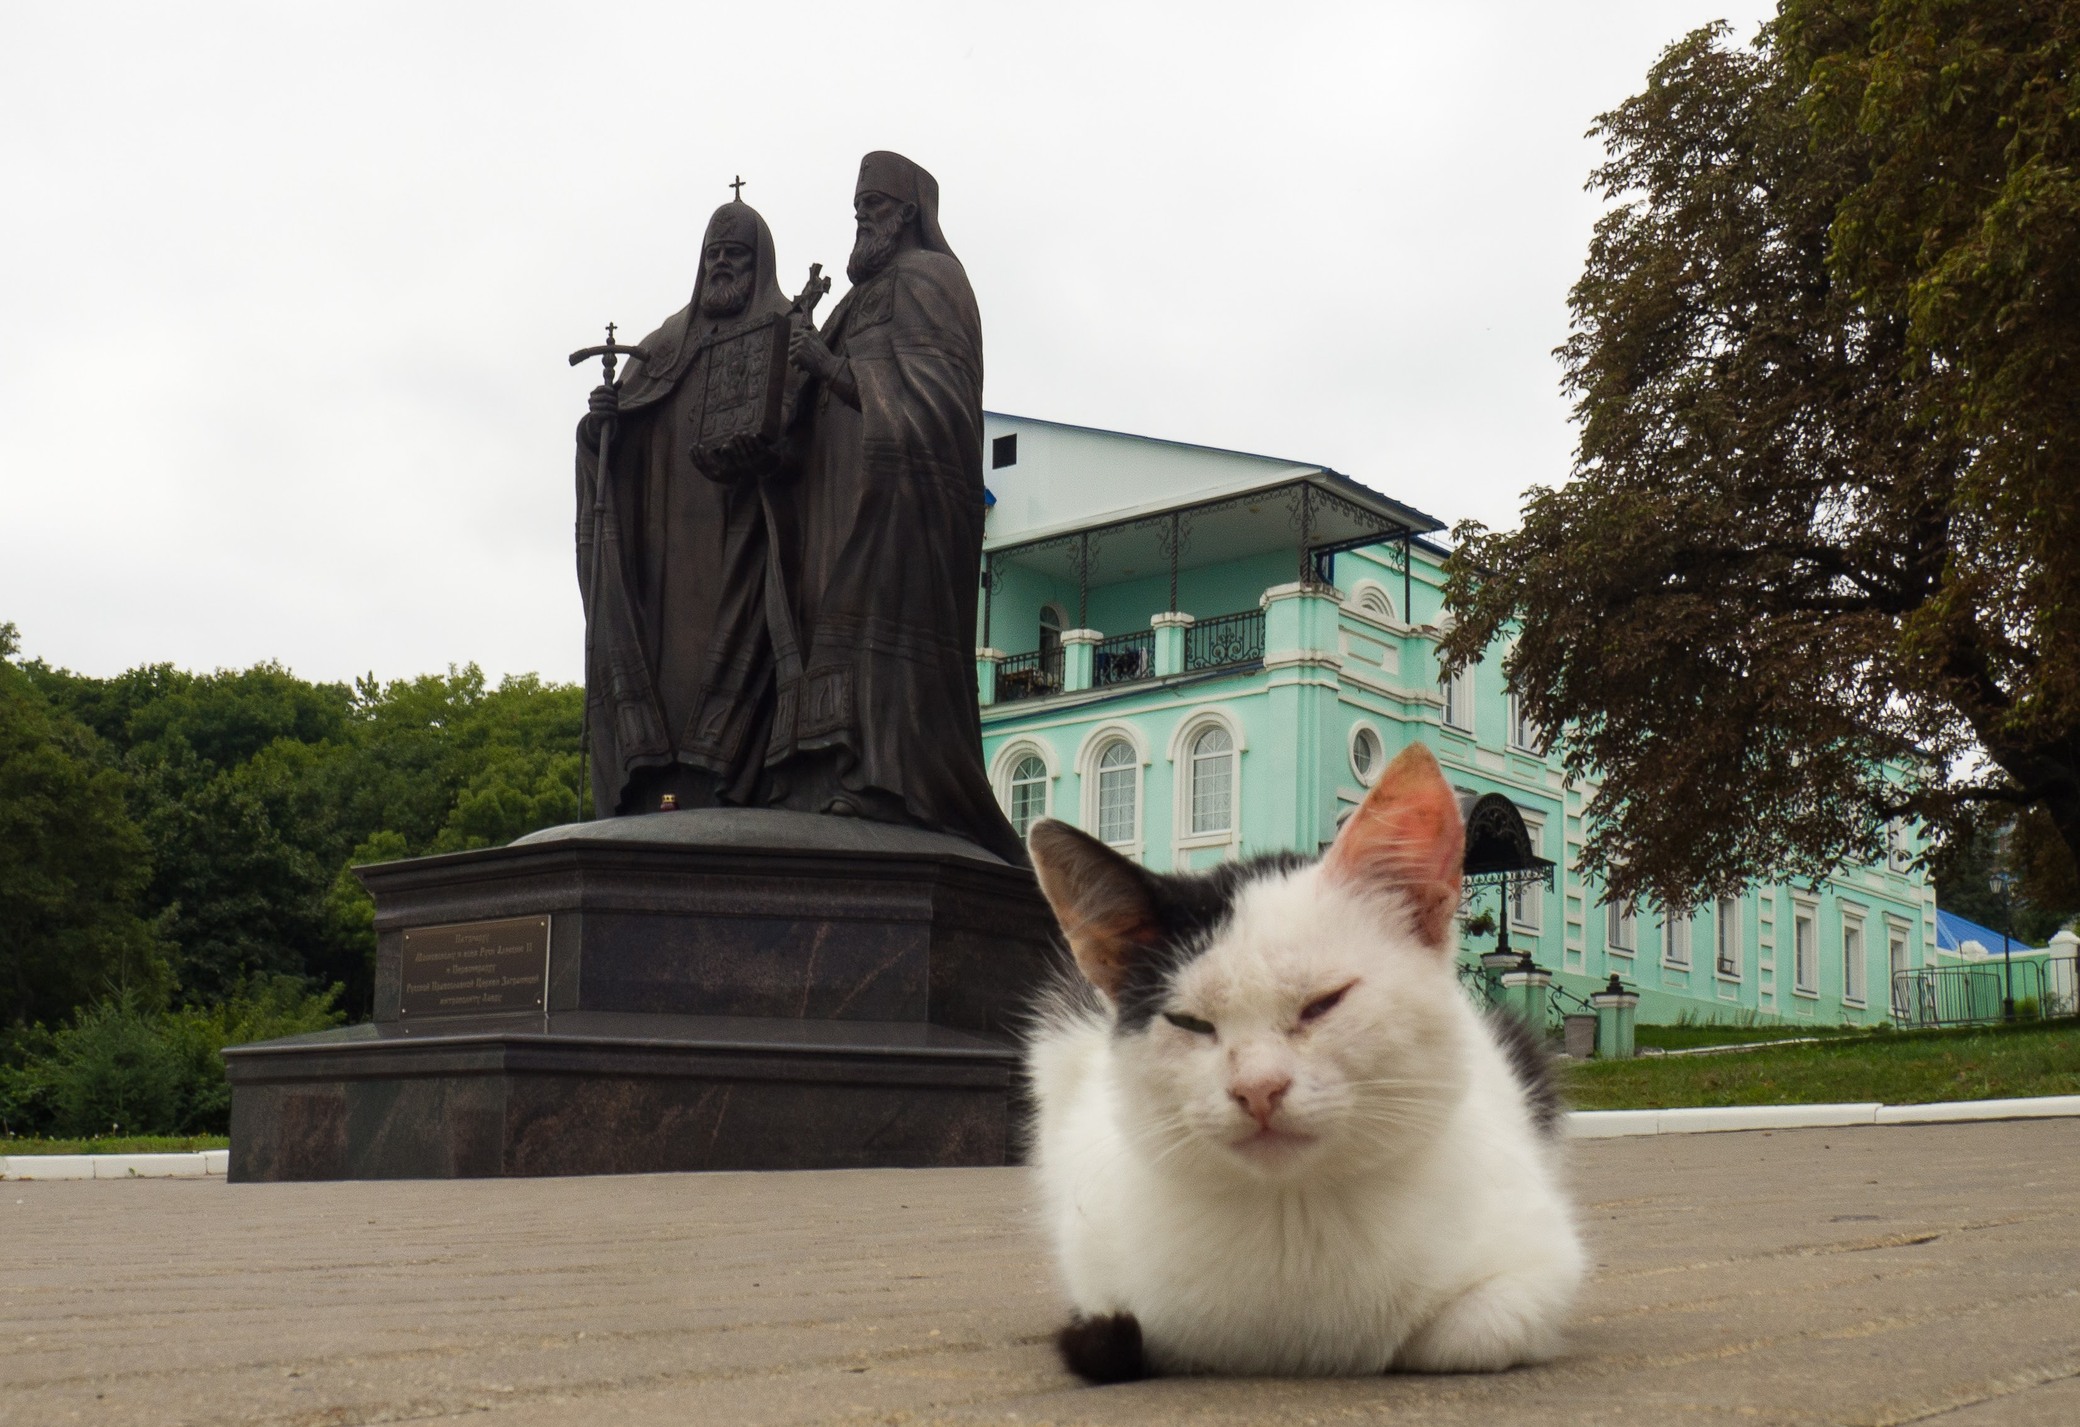 Памятник патриарху Алексию II и митрополиту Лавру